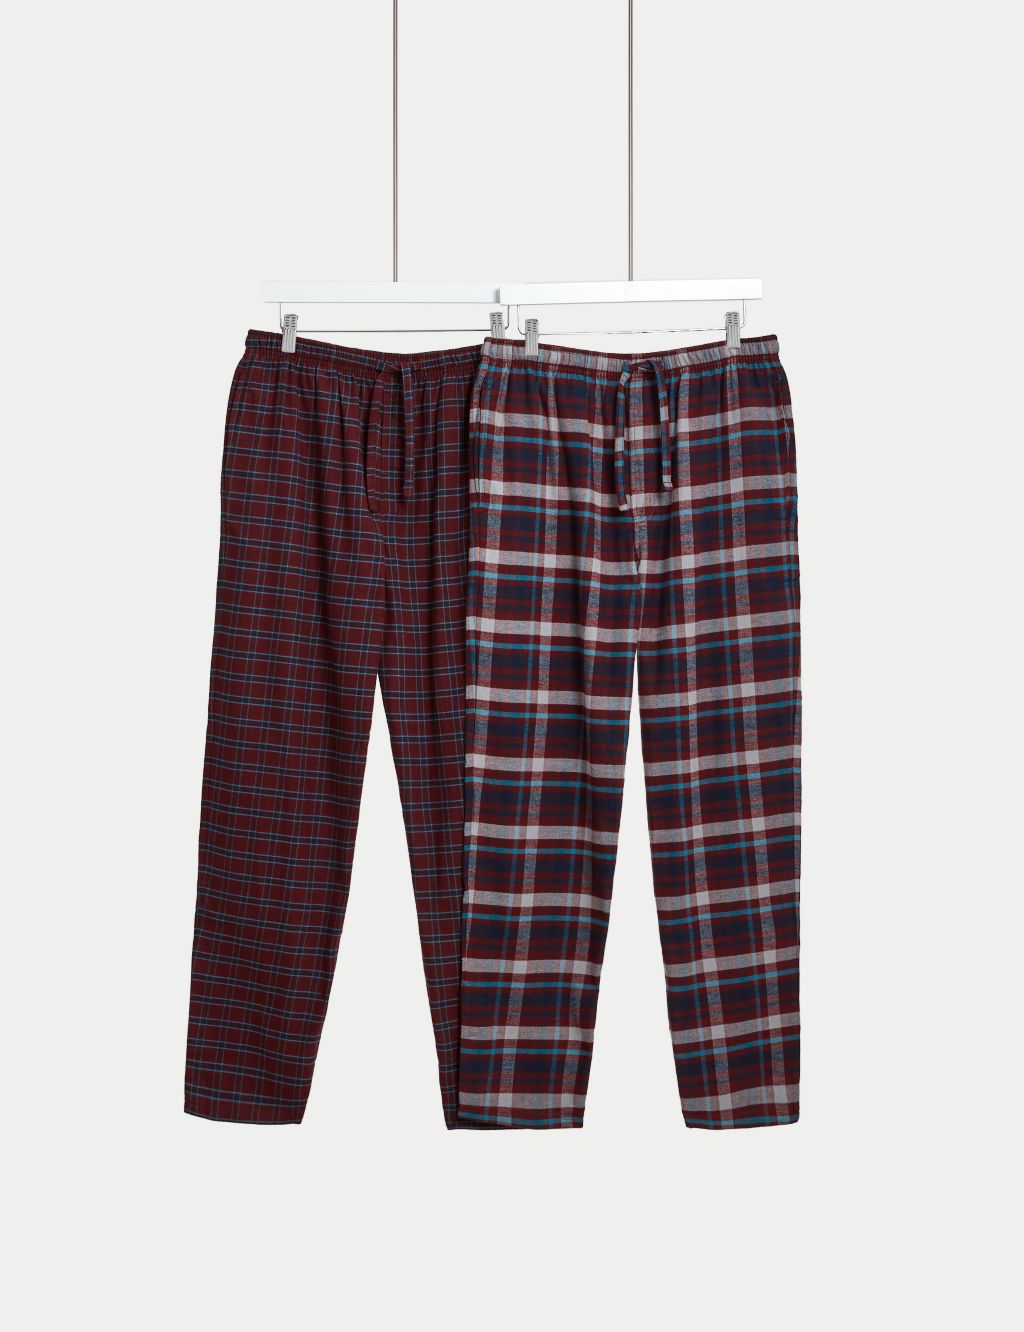 Men's Pyjama Bottoms